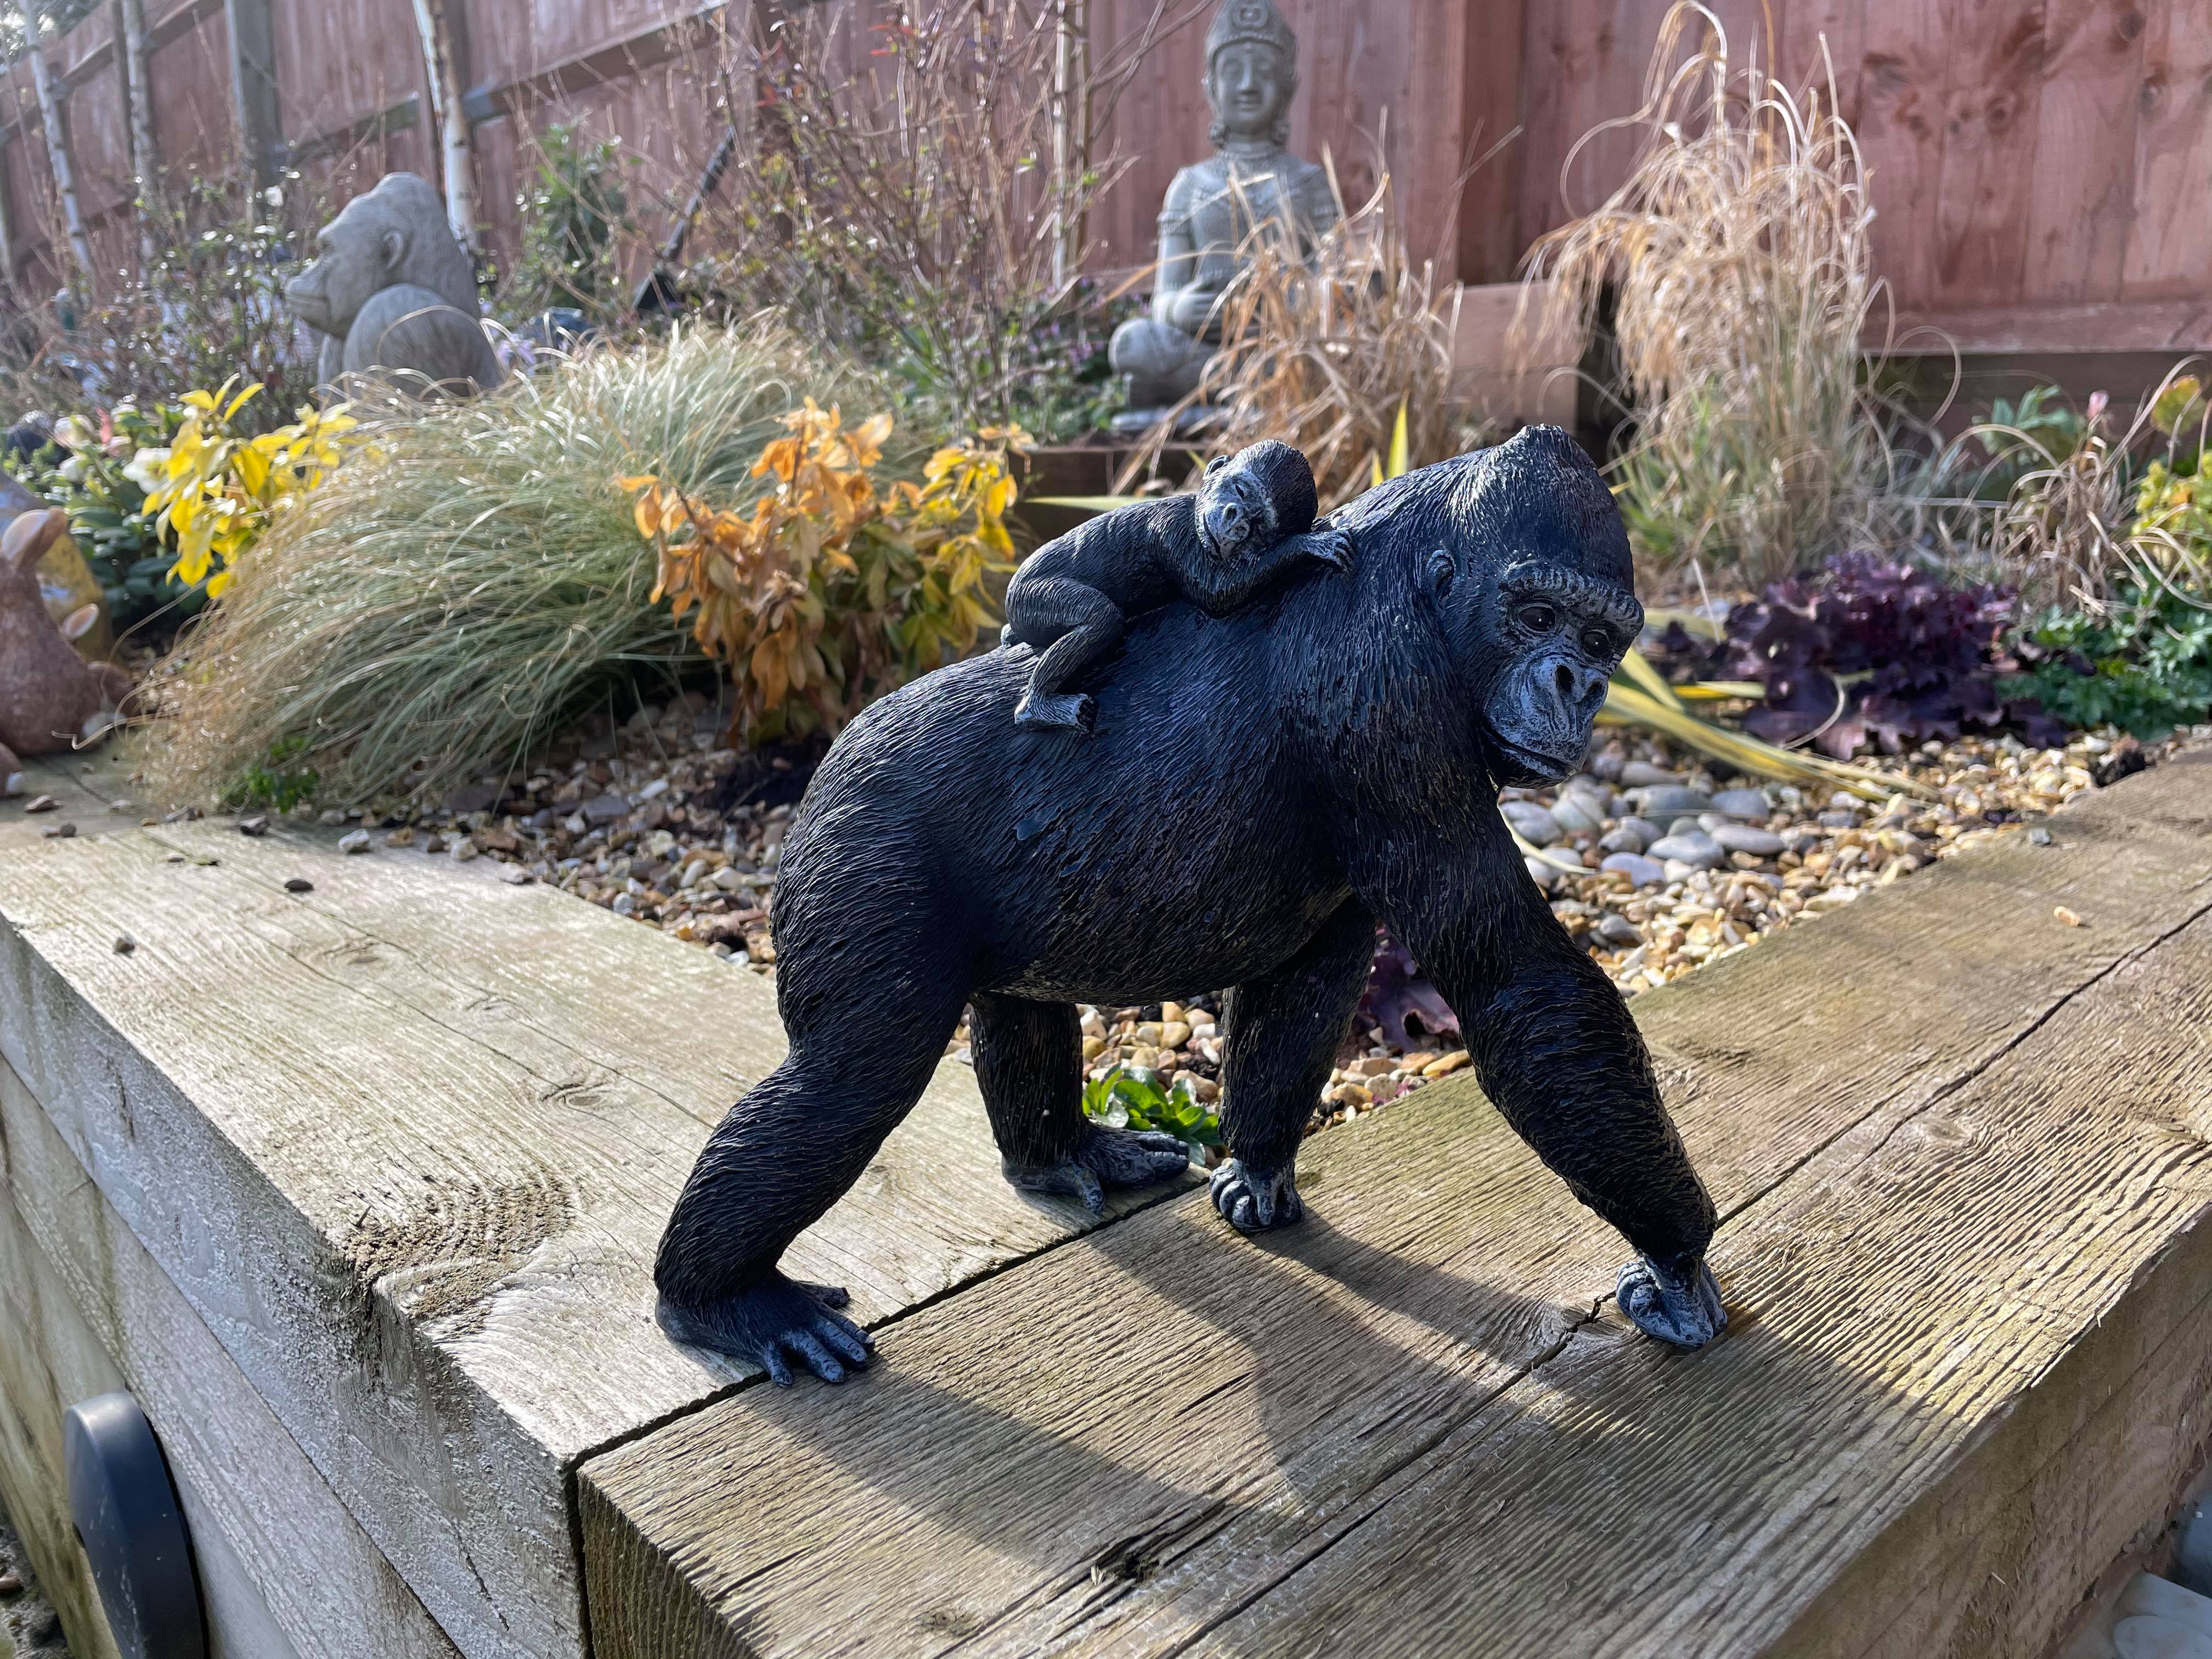 Gorilla Silver back male ape ornament Garden or home concrete stone statue  sulpt